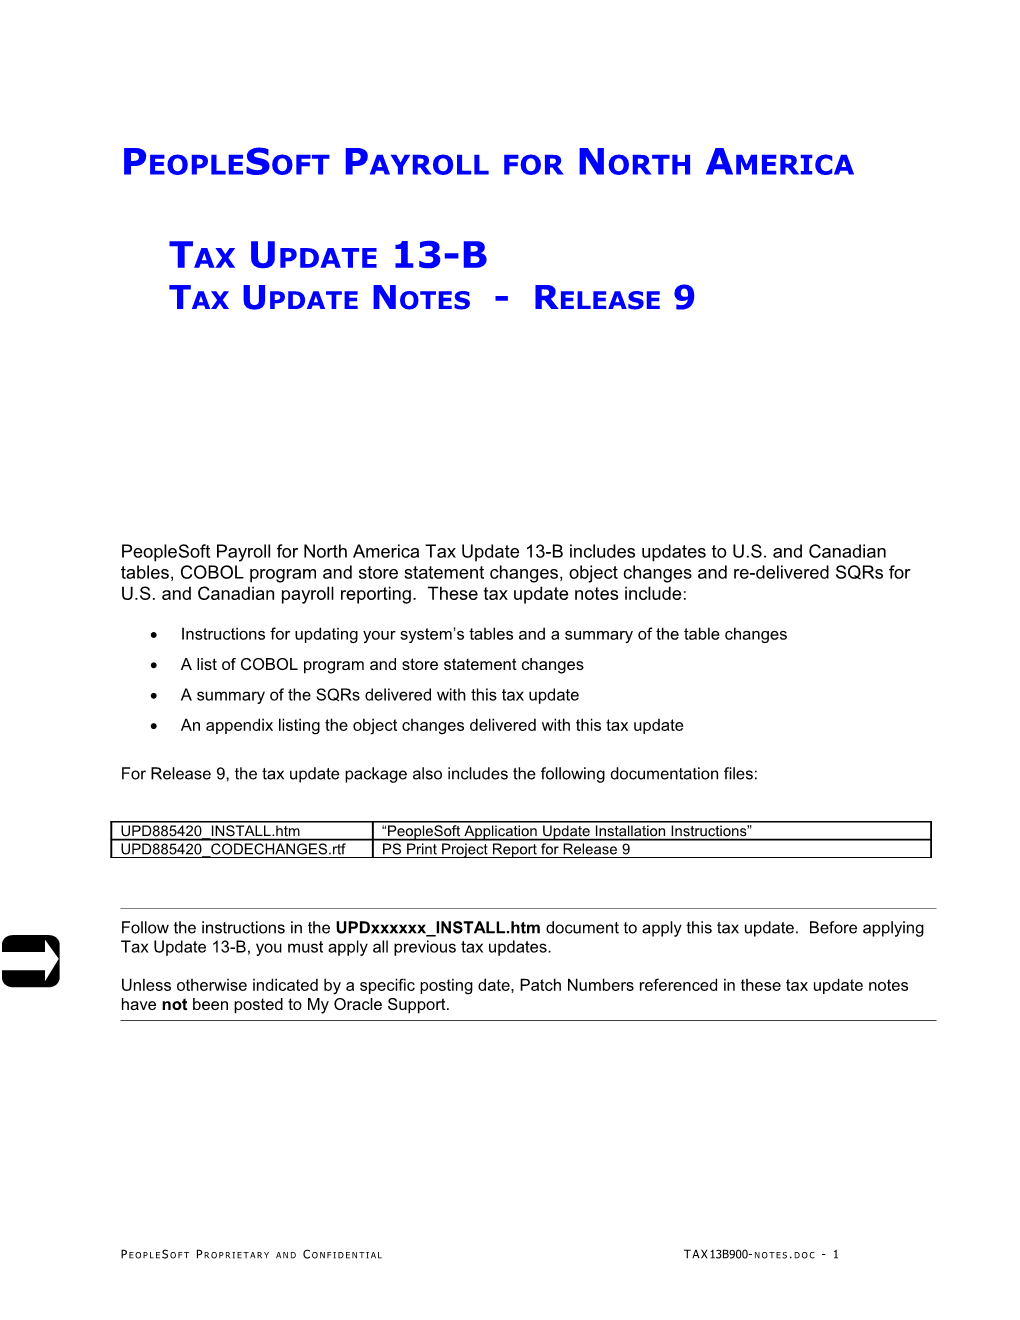 9.00 - Peoplesoft Payroll Tax Update 13-B